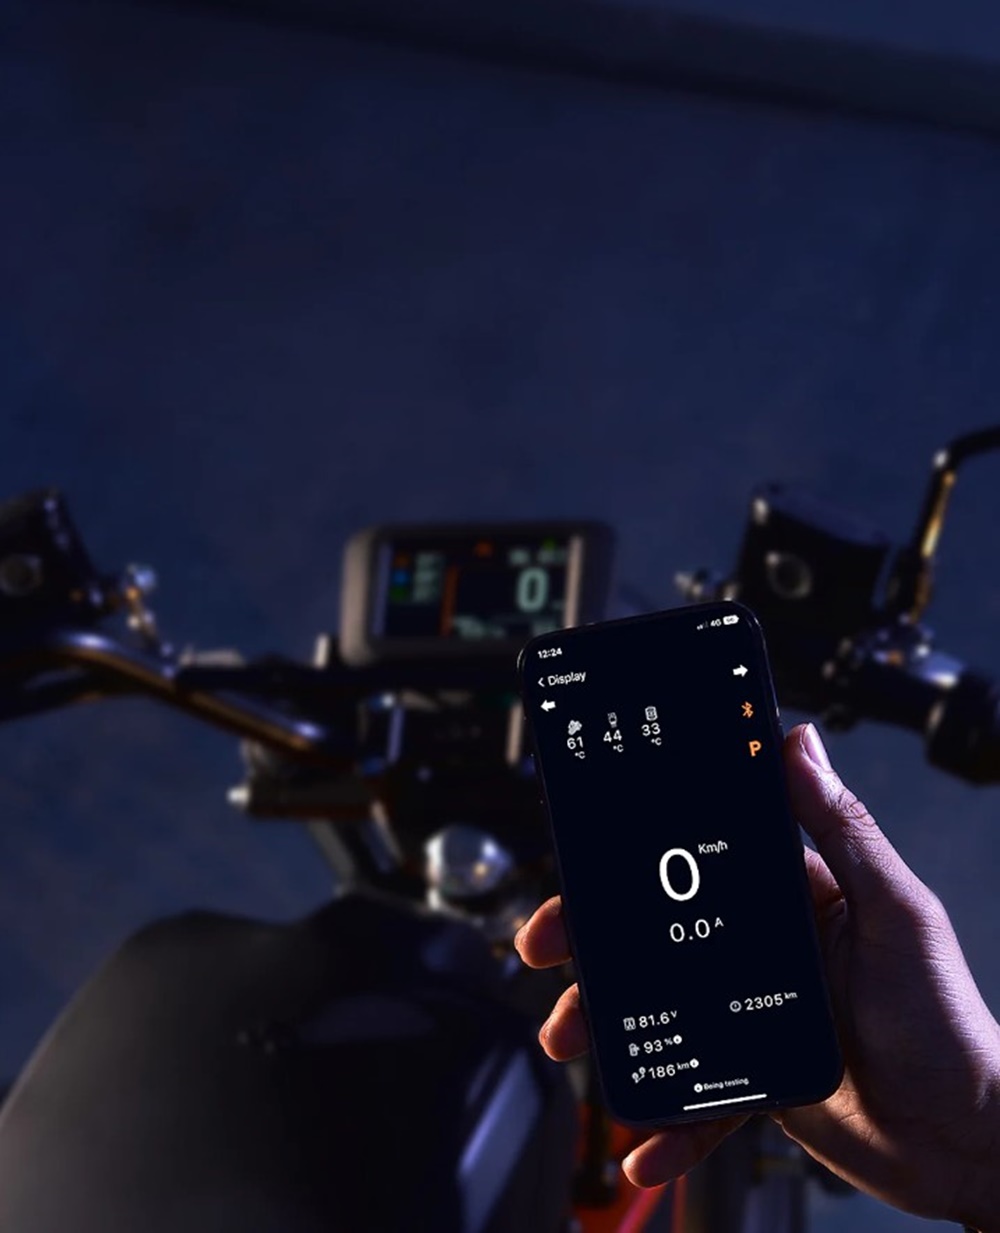 Người dùng có thể sử dụng xe thông qua app Dat Bike trên điện thoại.